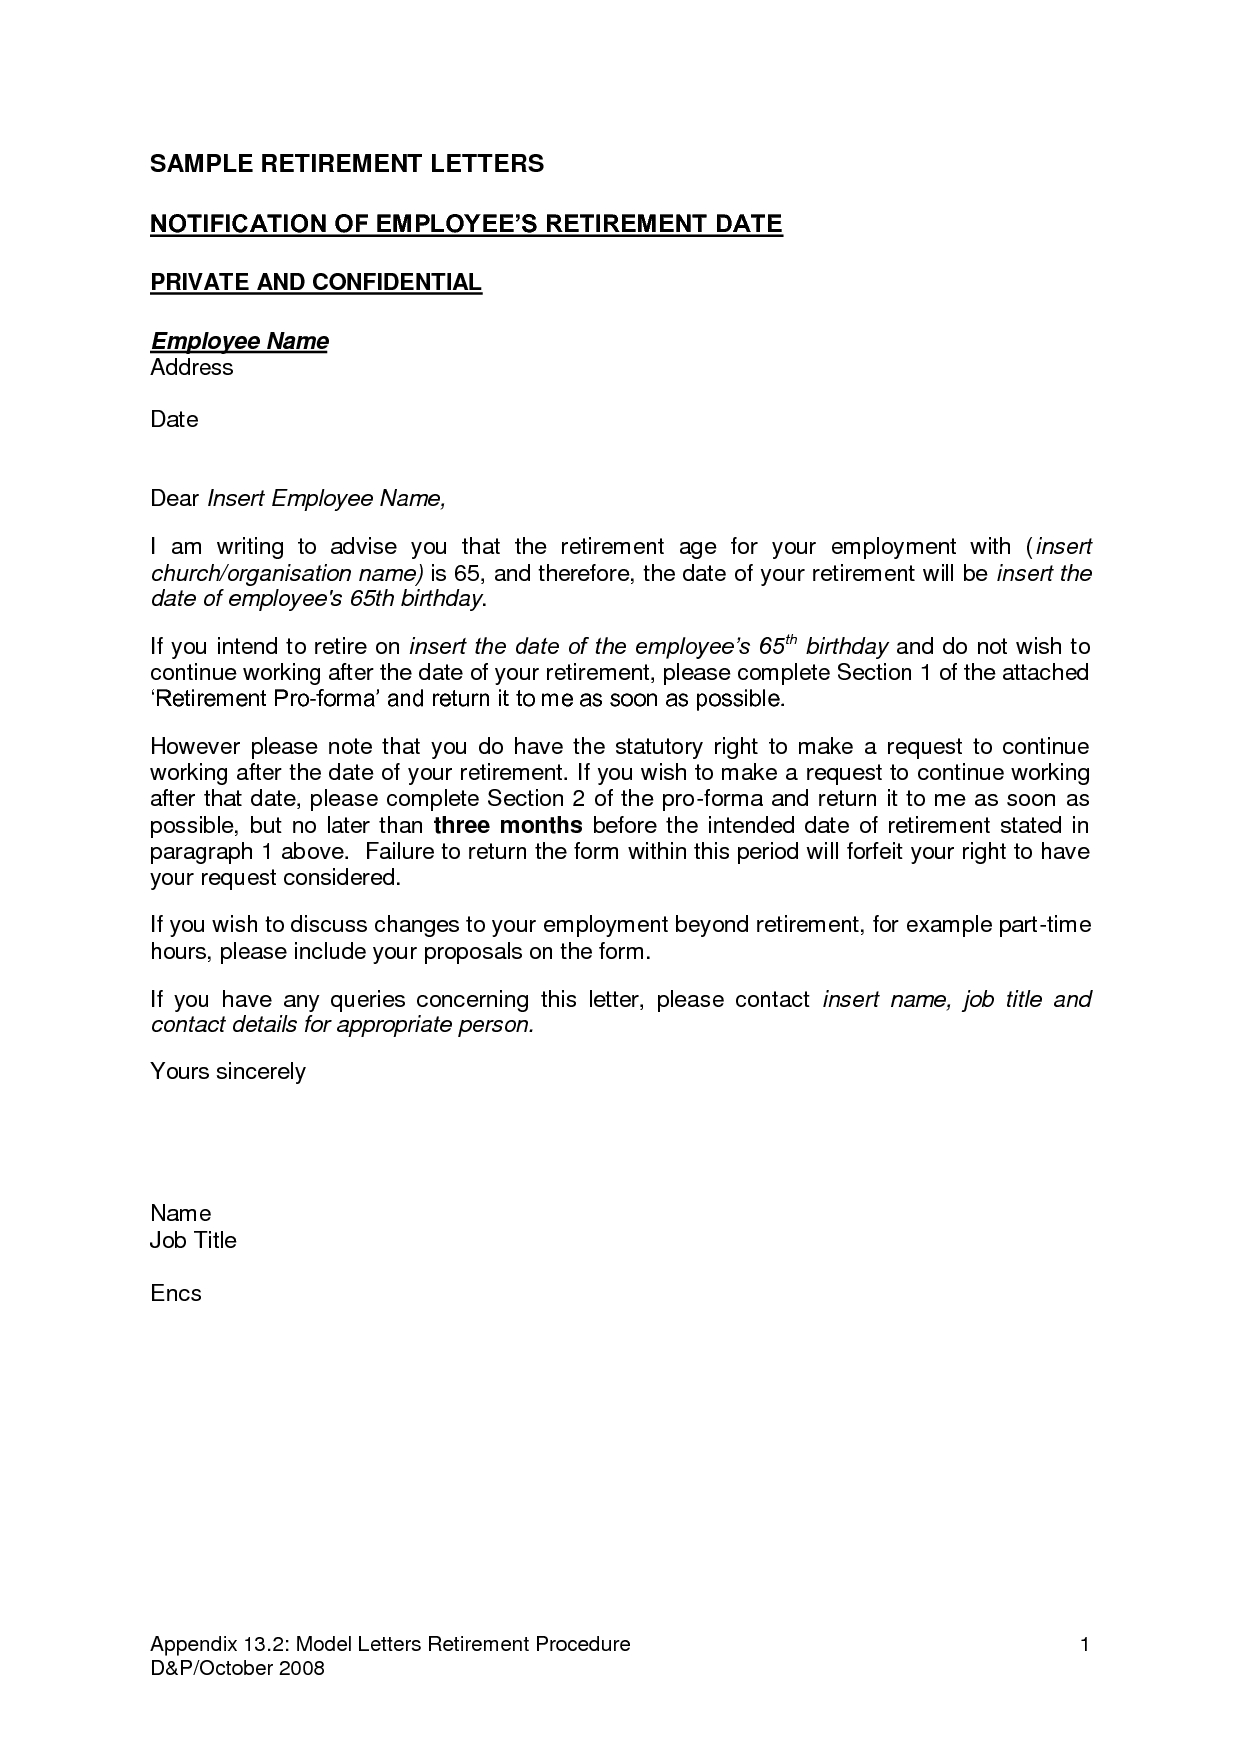 Resignation Letter Template October 2012 For Letter Sample